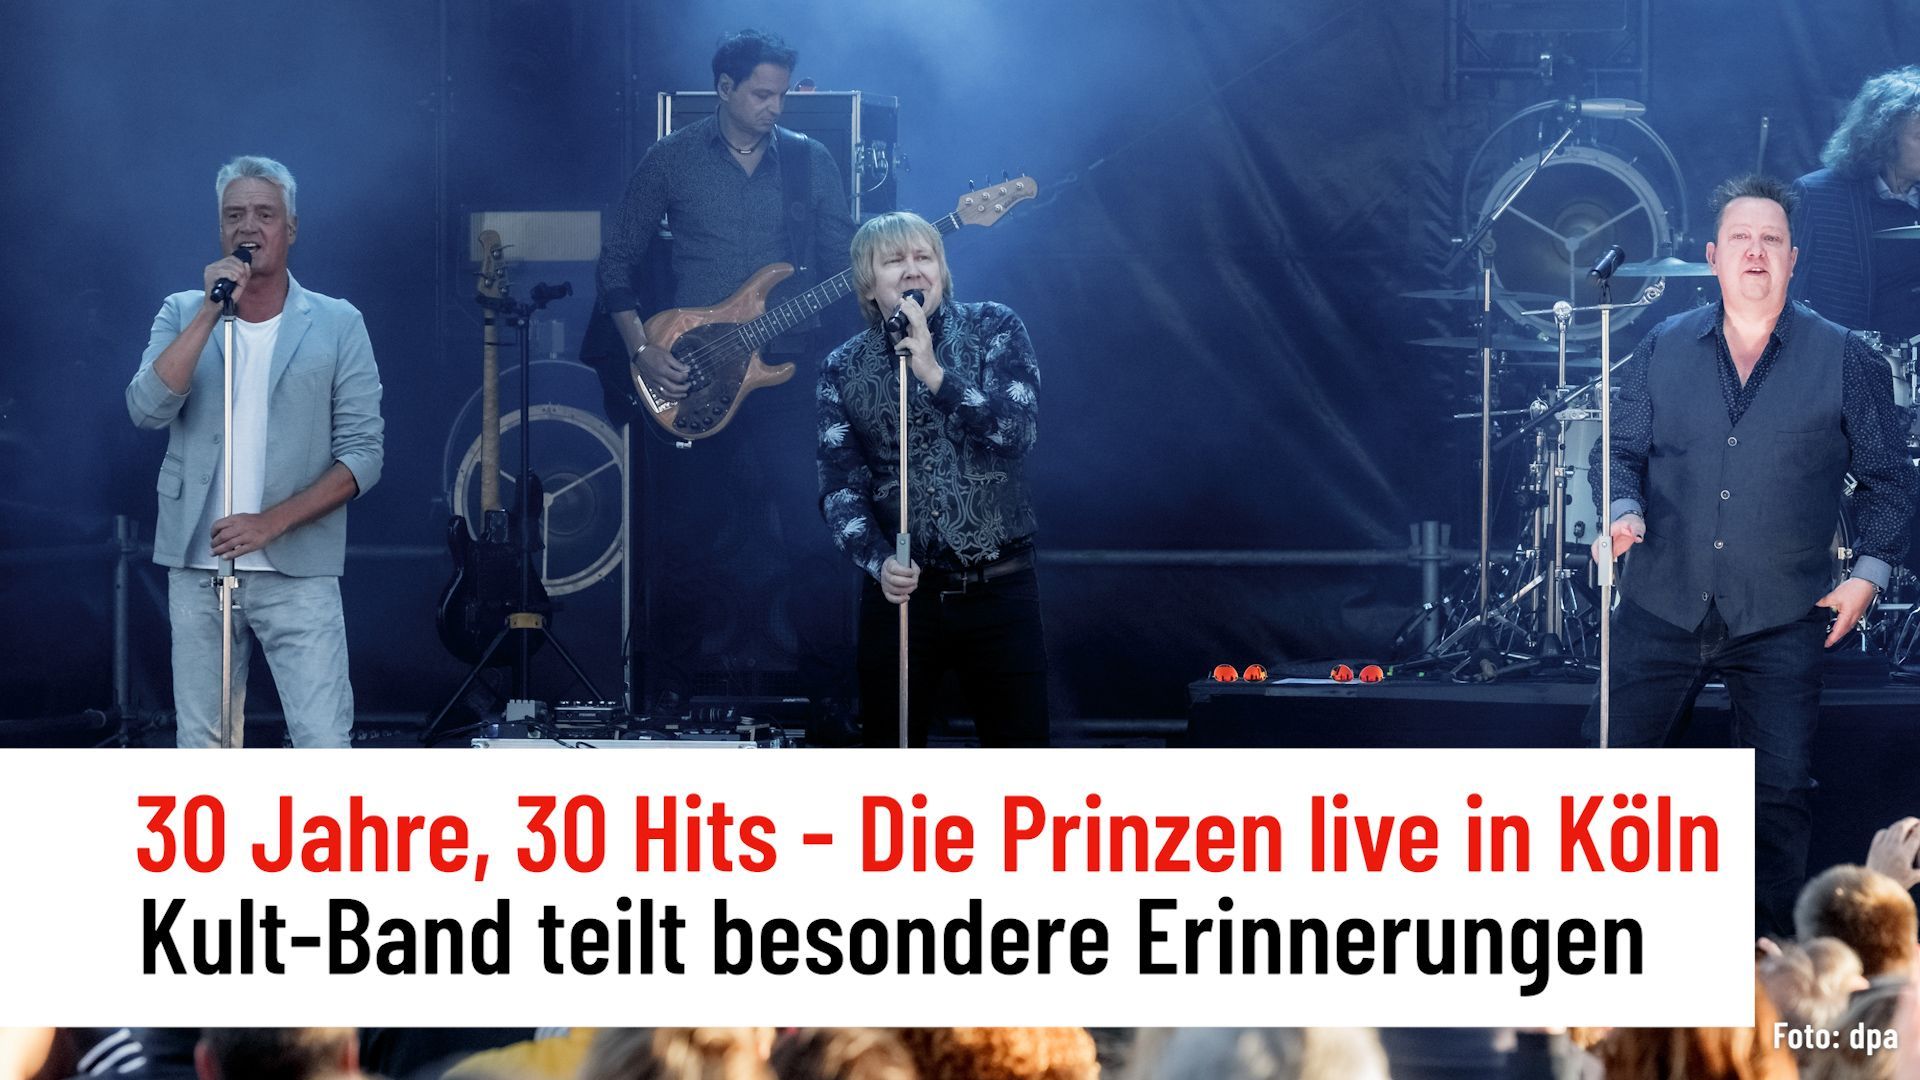 Die Prinzen live in Köln - Kult-Band teilt besondere Erinnerungen